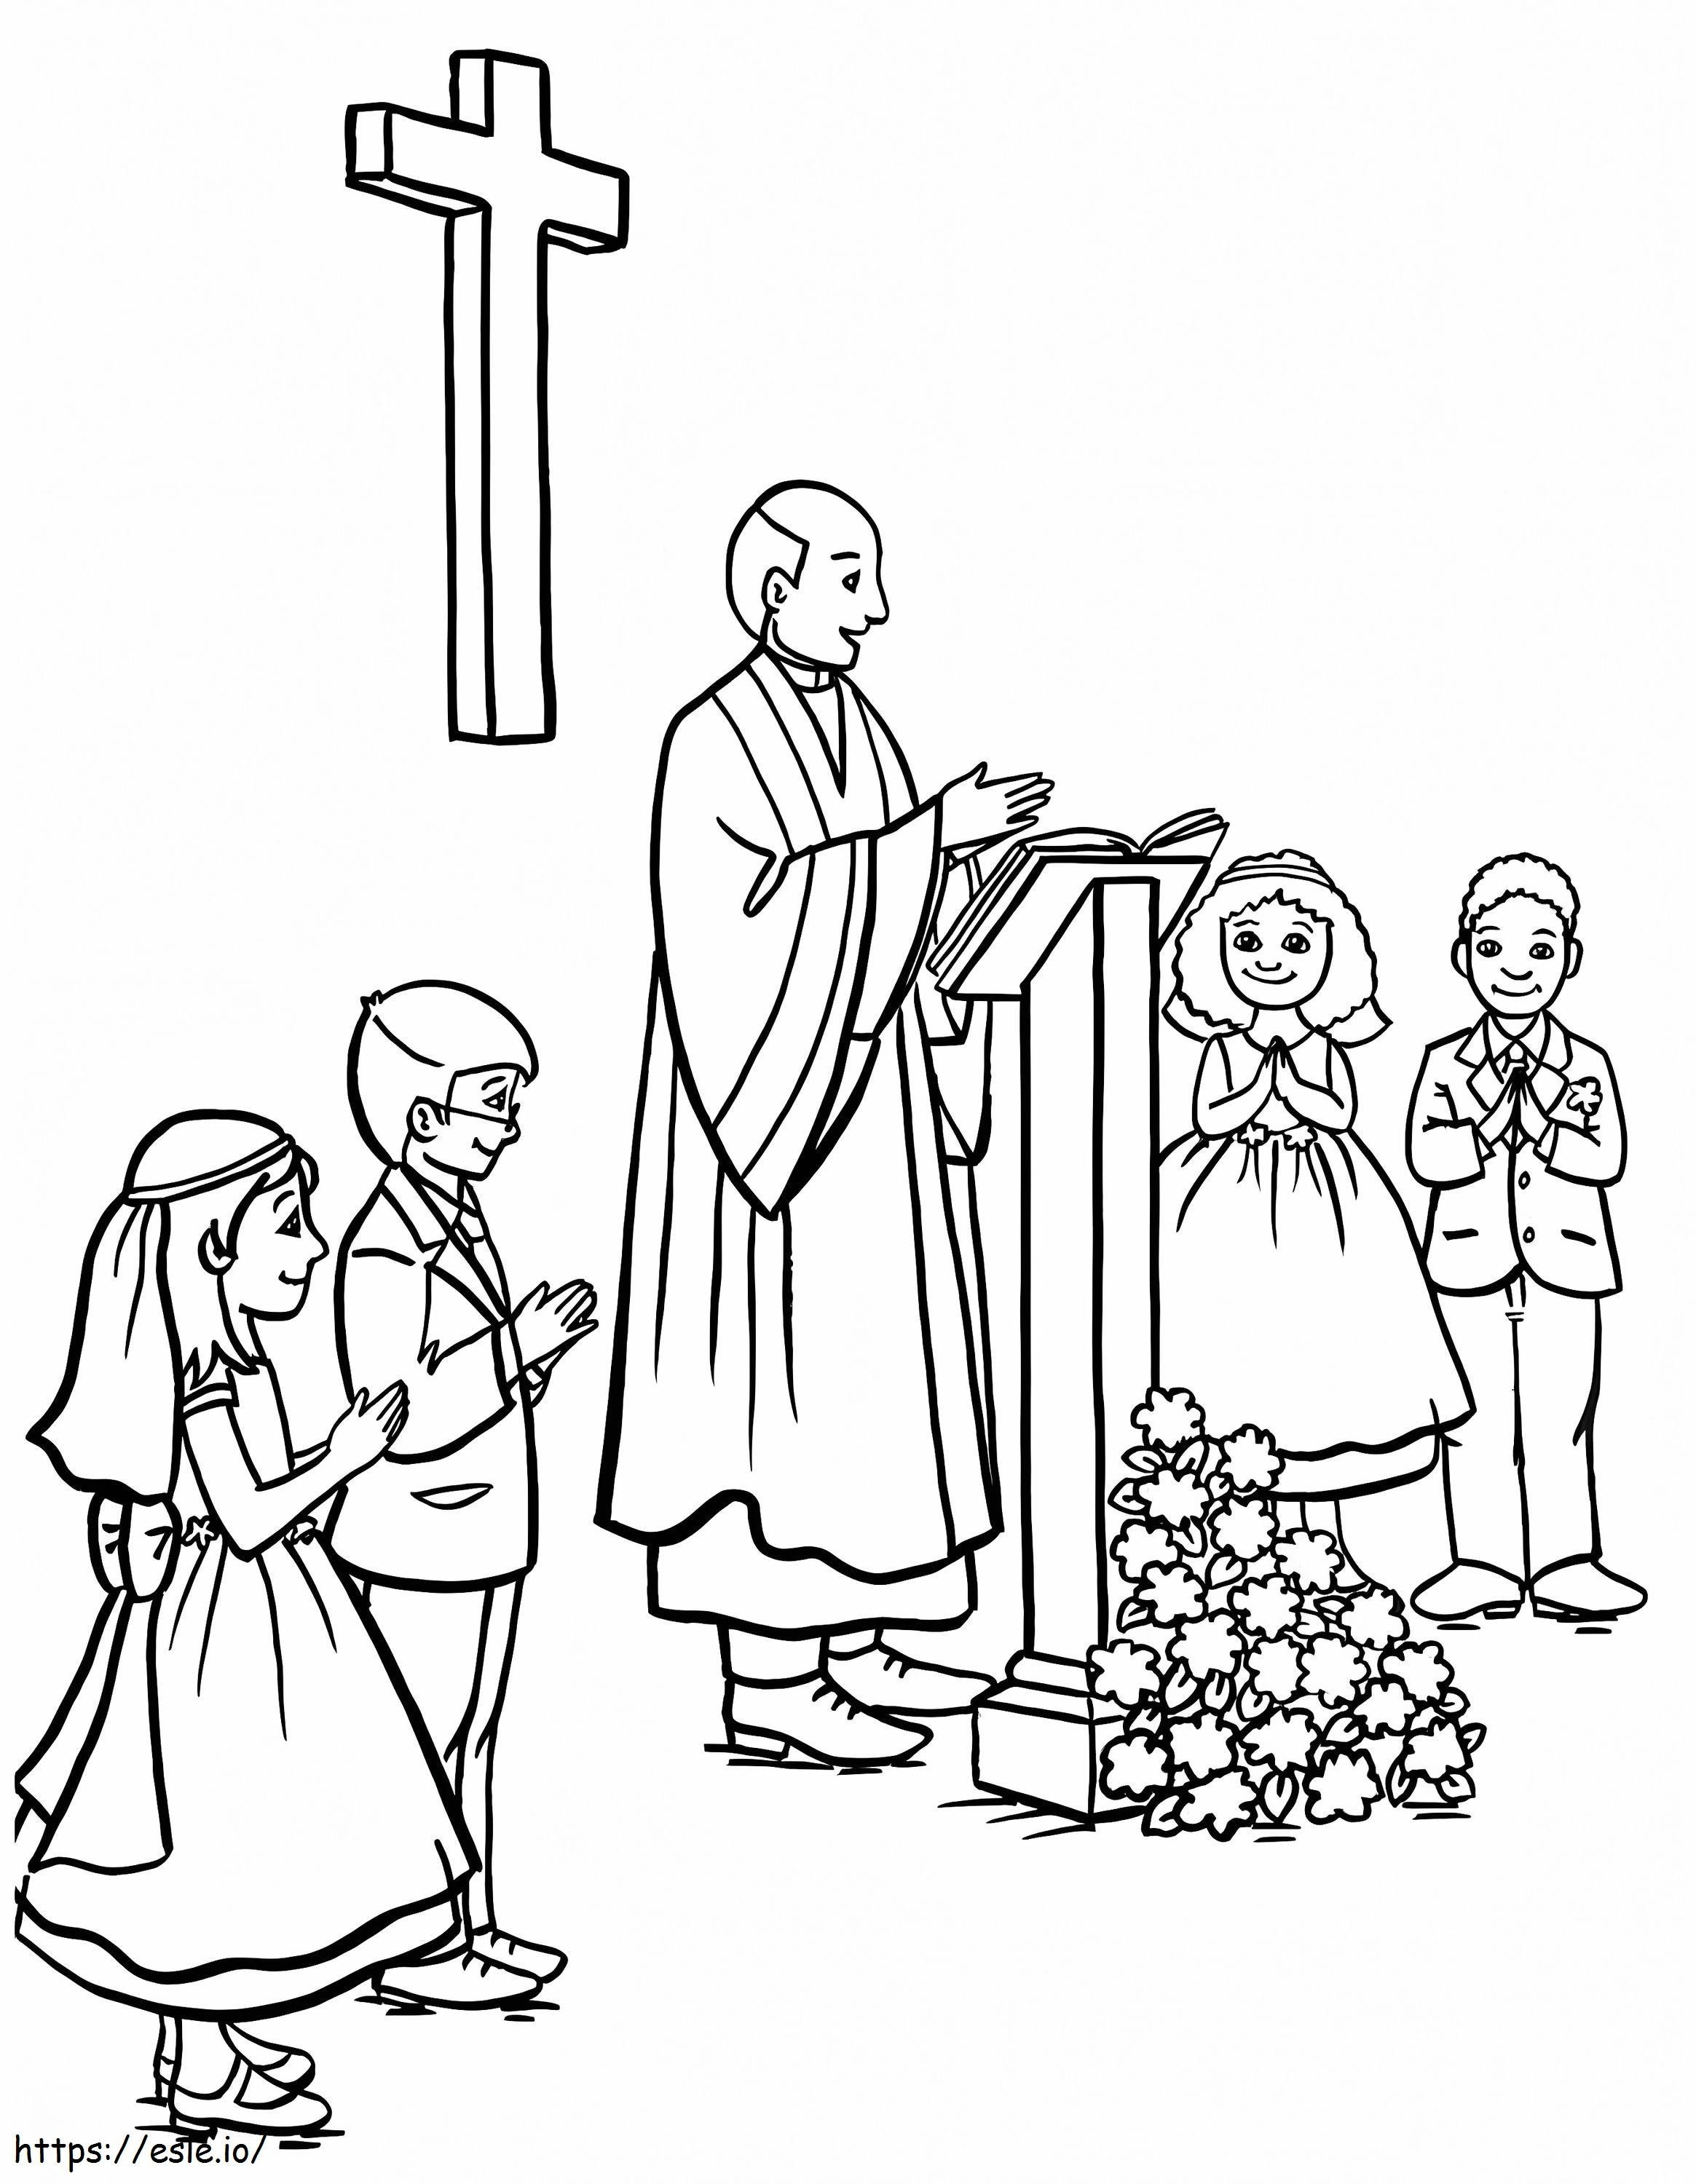 Kinder während der Kirchenkommunion ausmalbilder